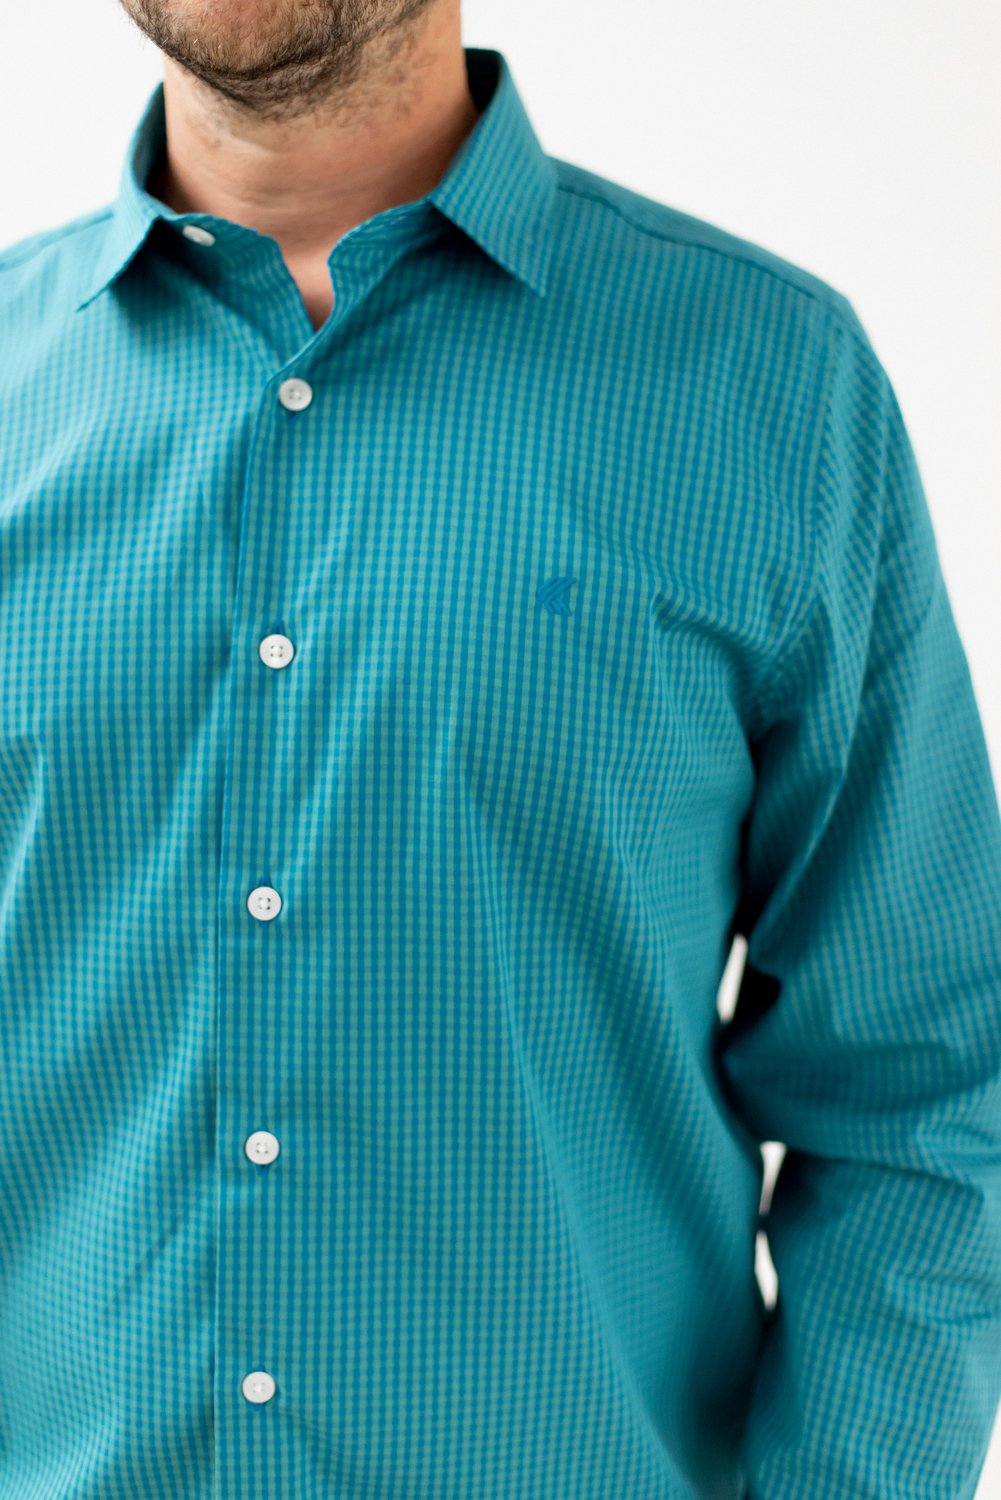 Camisa Comfort Xadrez Azul e Verde 4